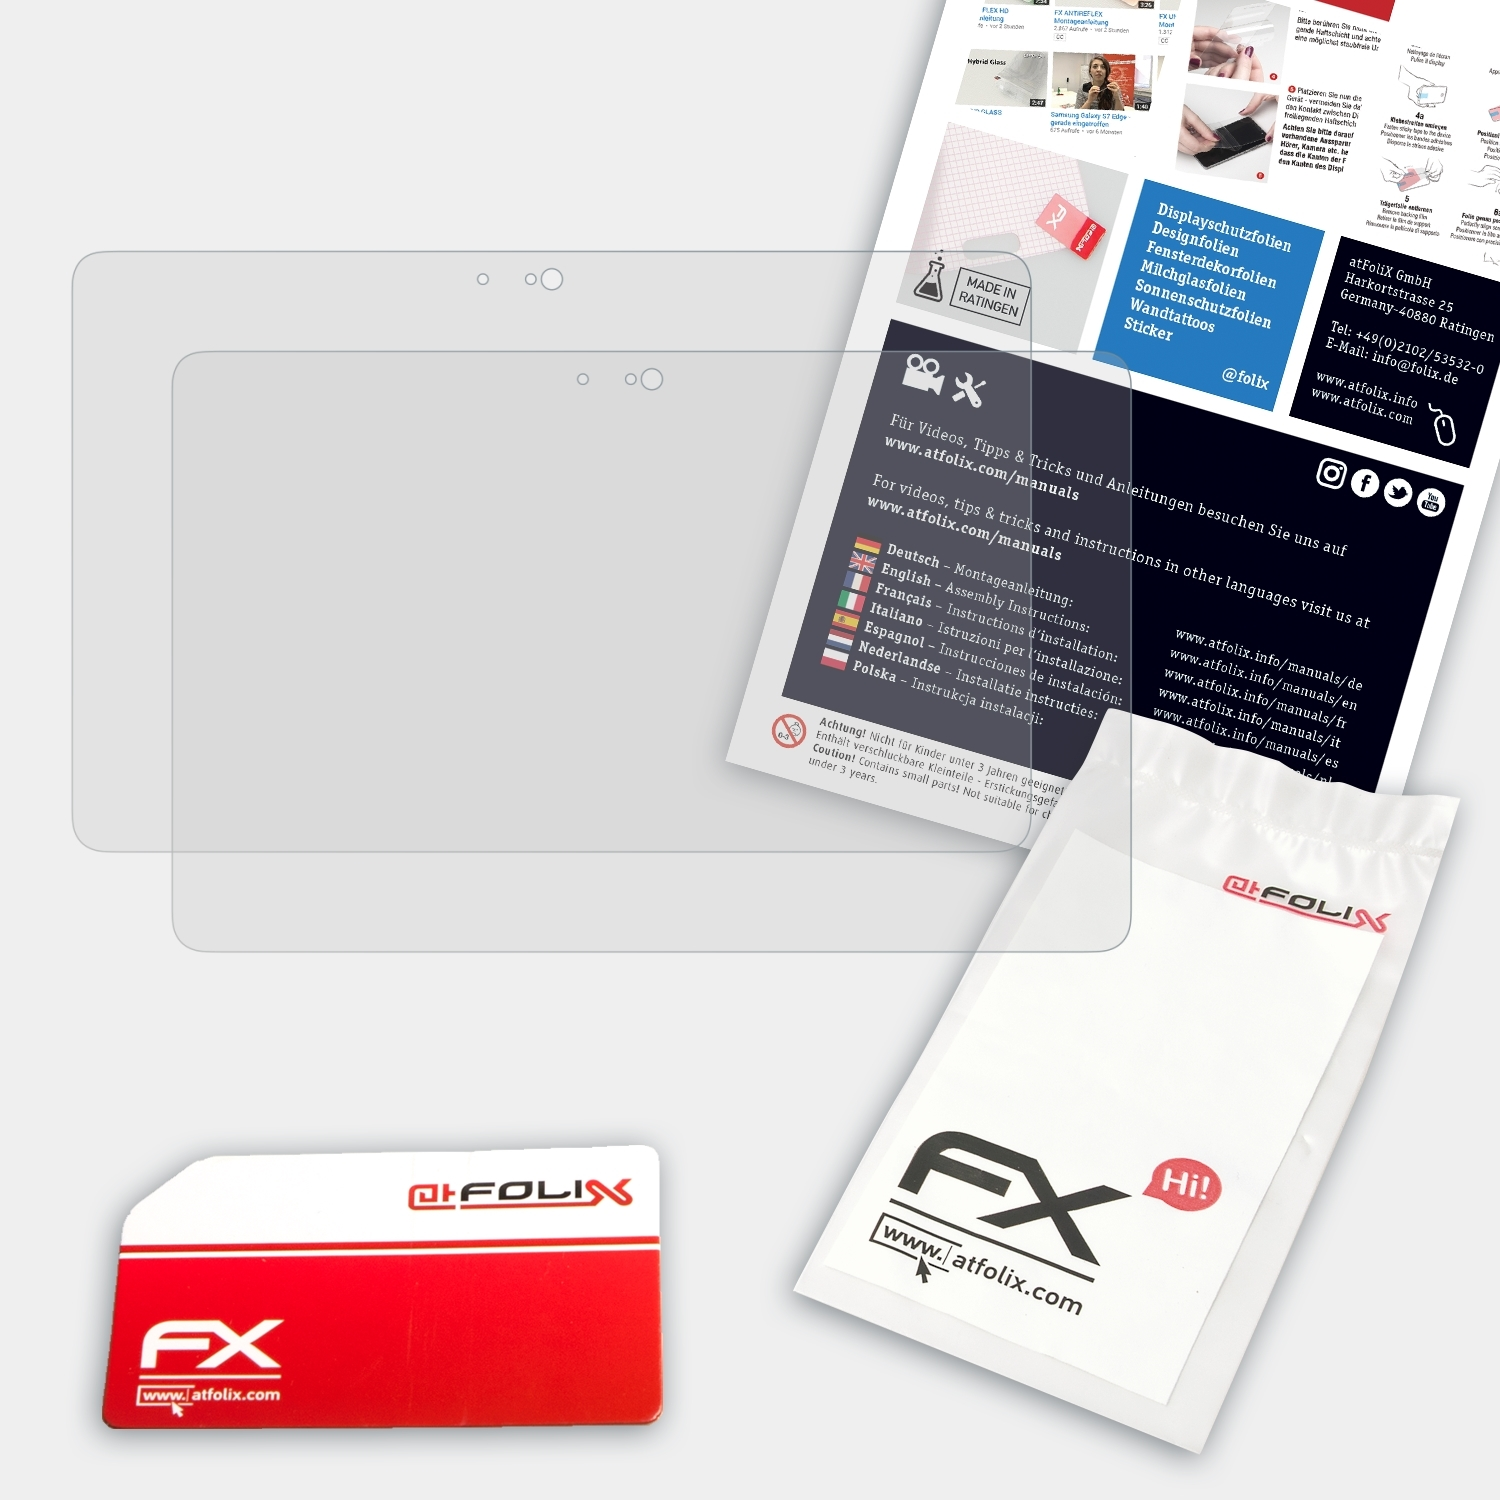 ATFOLIX 2x FX-Antireflex 11 7000) Dell Pro Displayschutz(für / Venue 5000